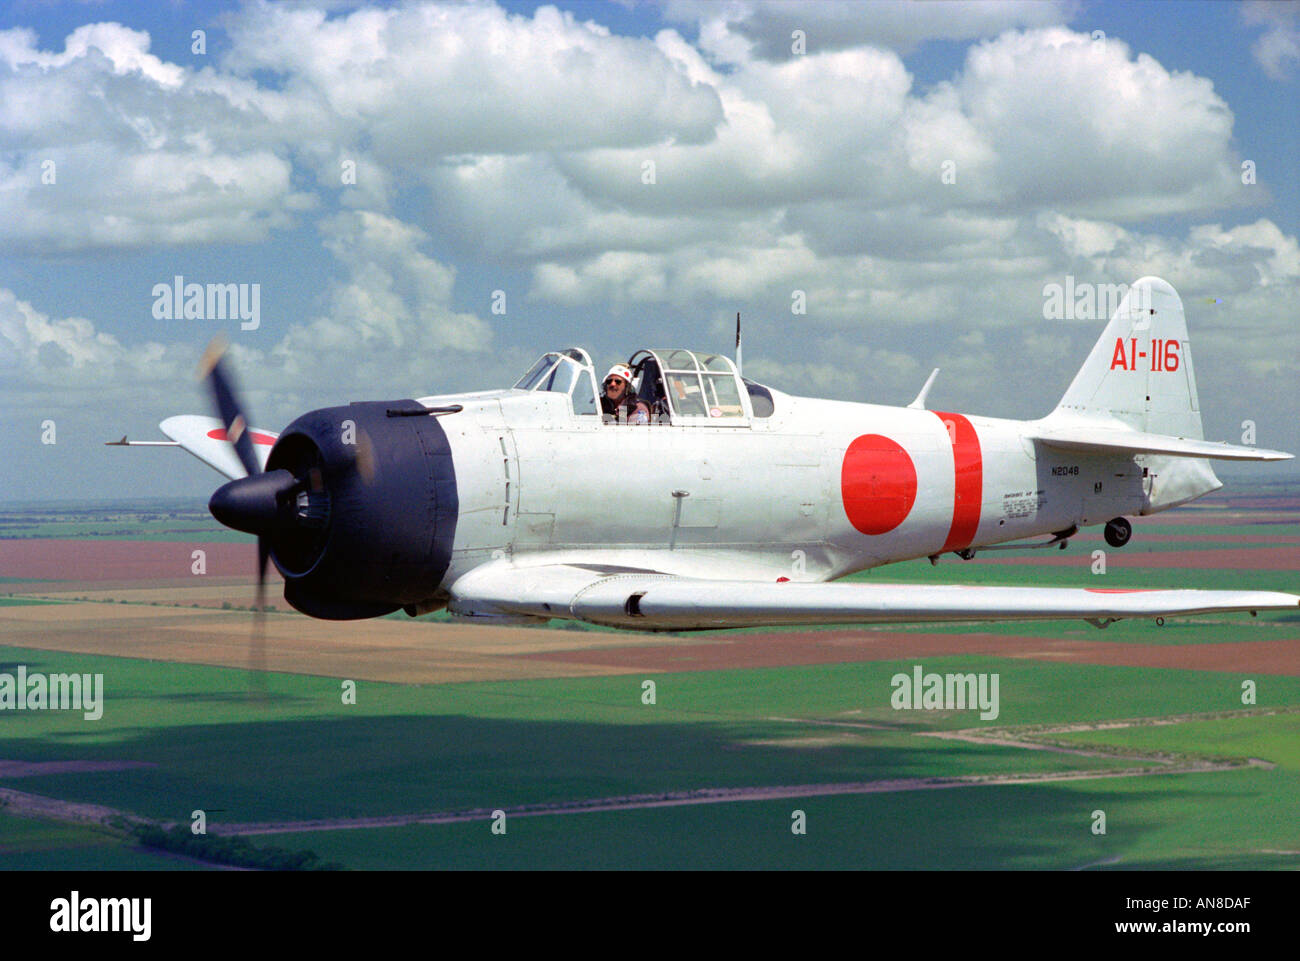 Le Japon zéro récréation de la guerre aérienne de la Seconde Guerre mondiale Banque D'Images